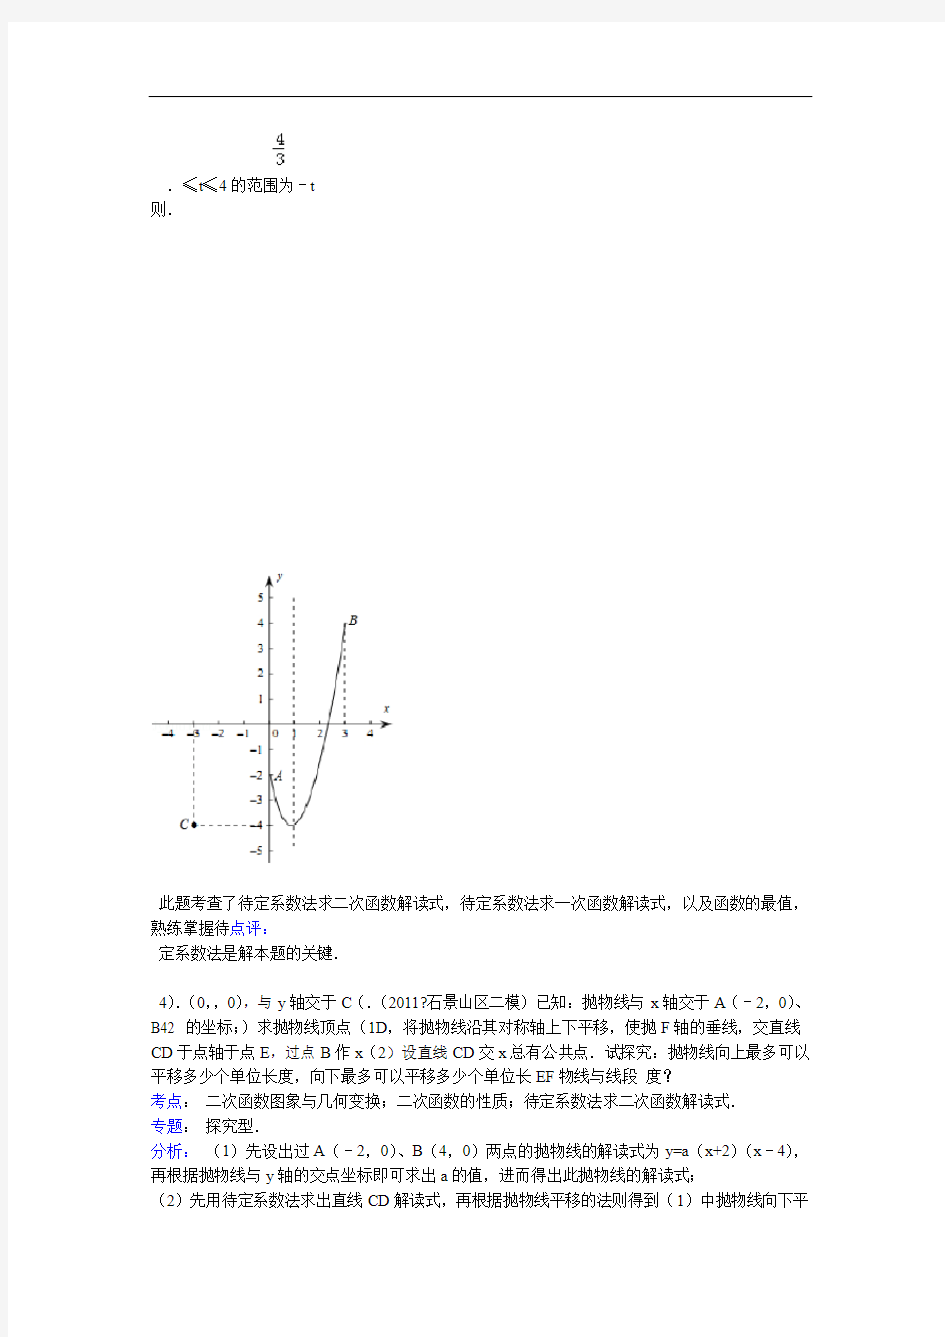 二次函数综合问题之抛物线和直线交点个数问题